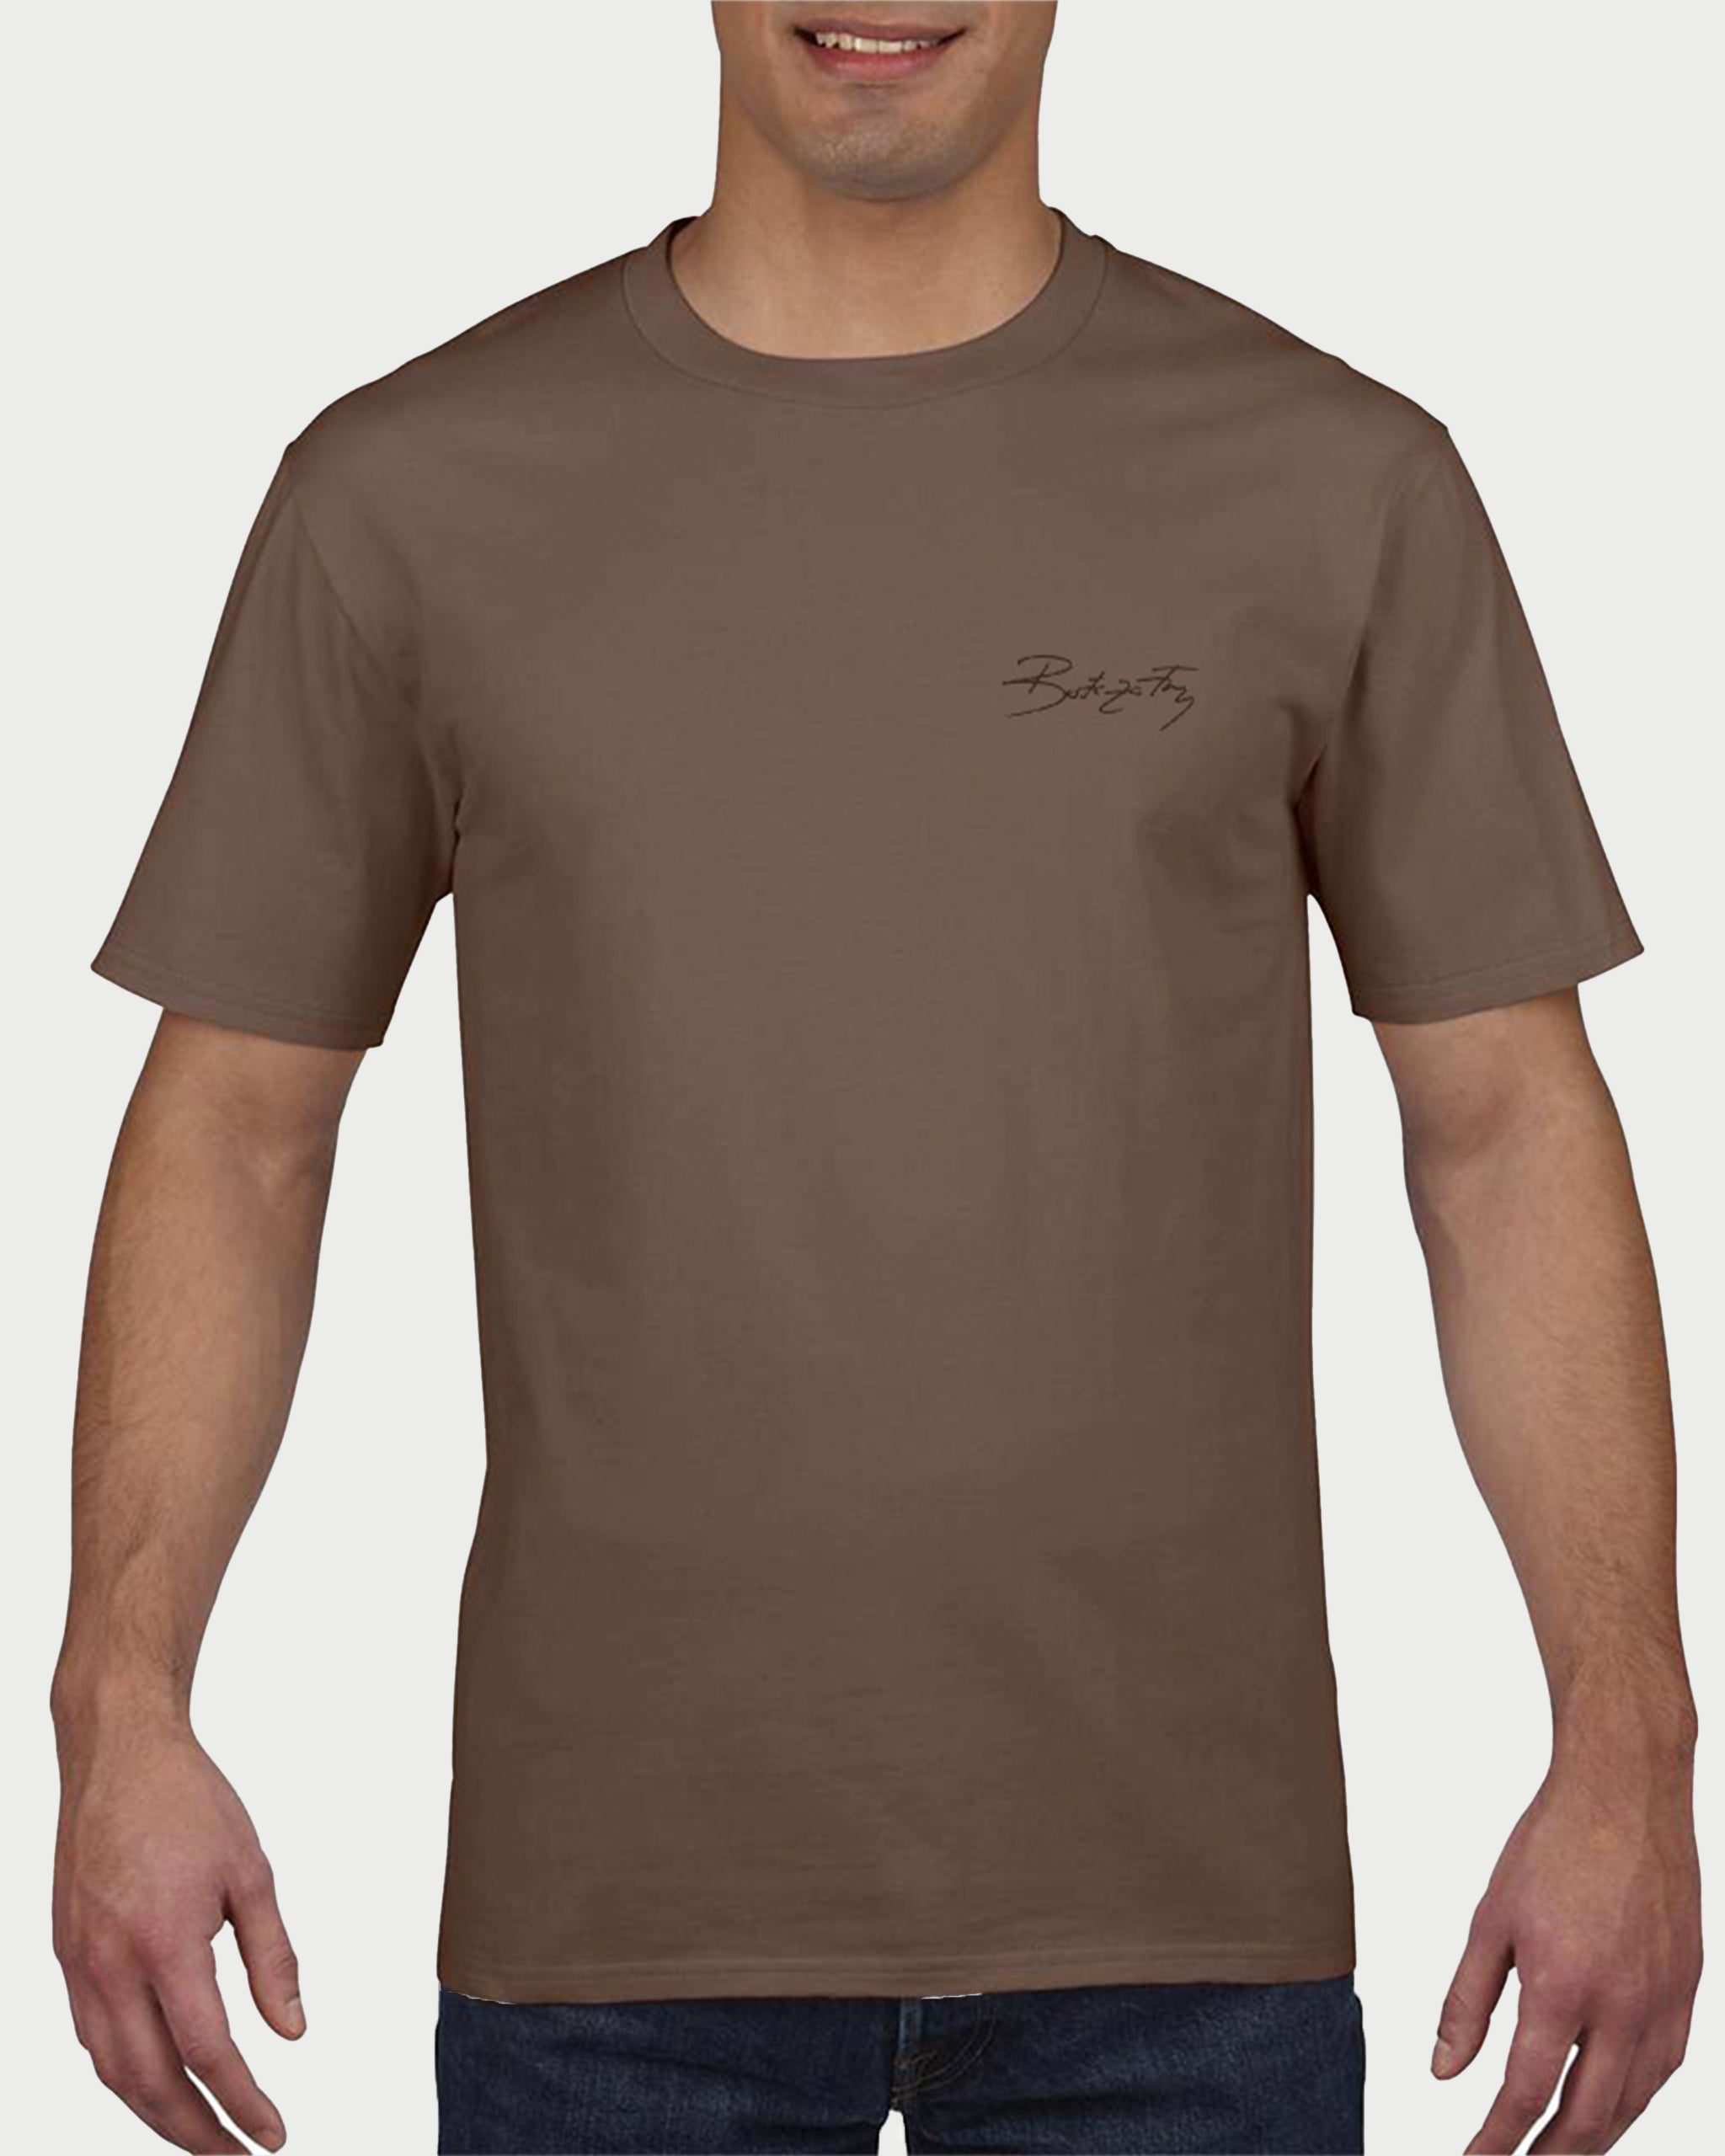 BROWN TEMPLAR - tricou barbati din bumbac premium